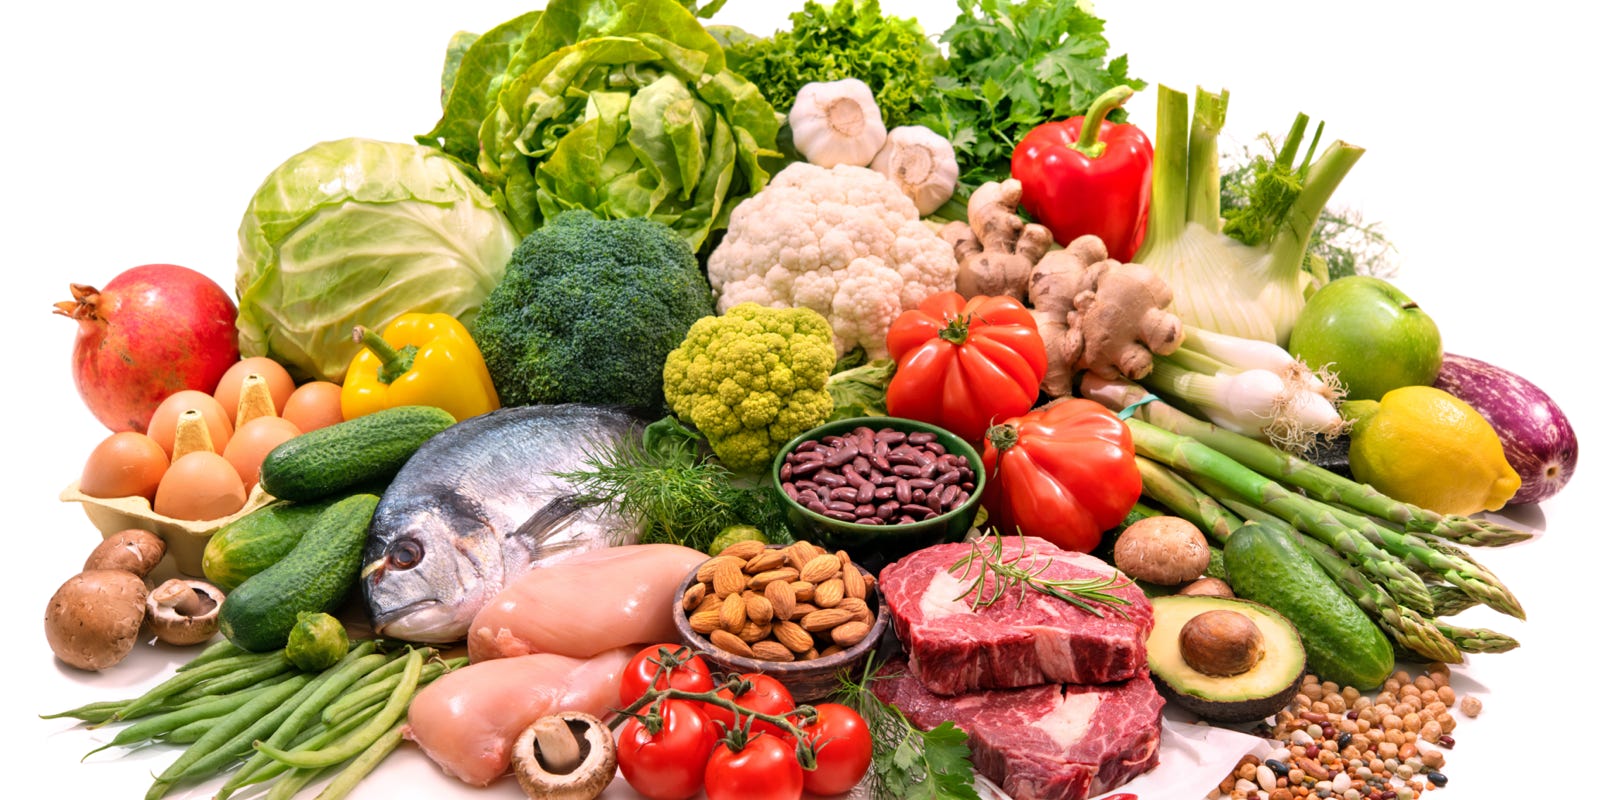 légumes, poissons, fruits et viandes